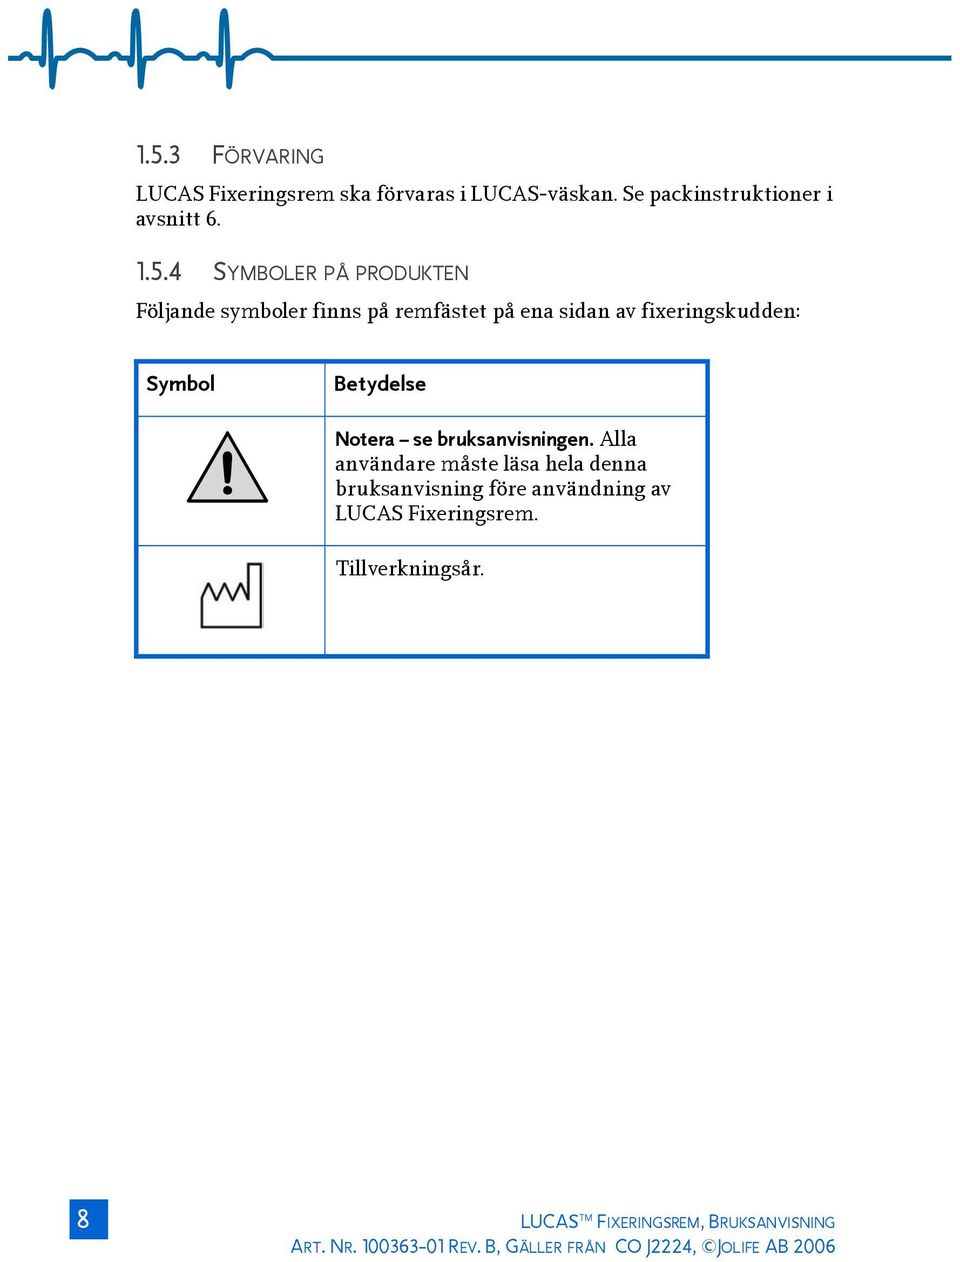 bruksanvisningen. Alla användare måste läsa hela denna bruksanvisning före användning av LUCAS Fixeringsrem.